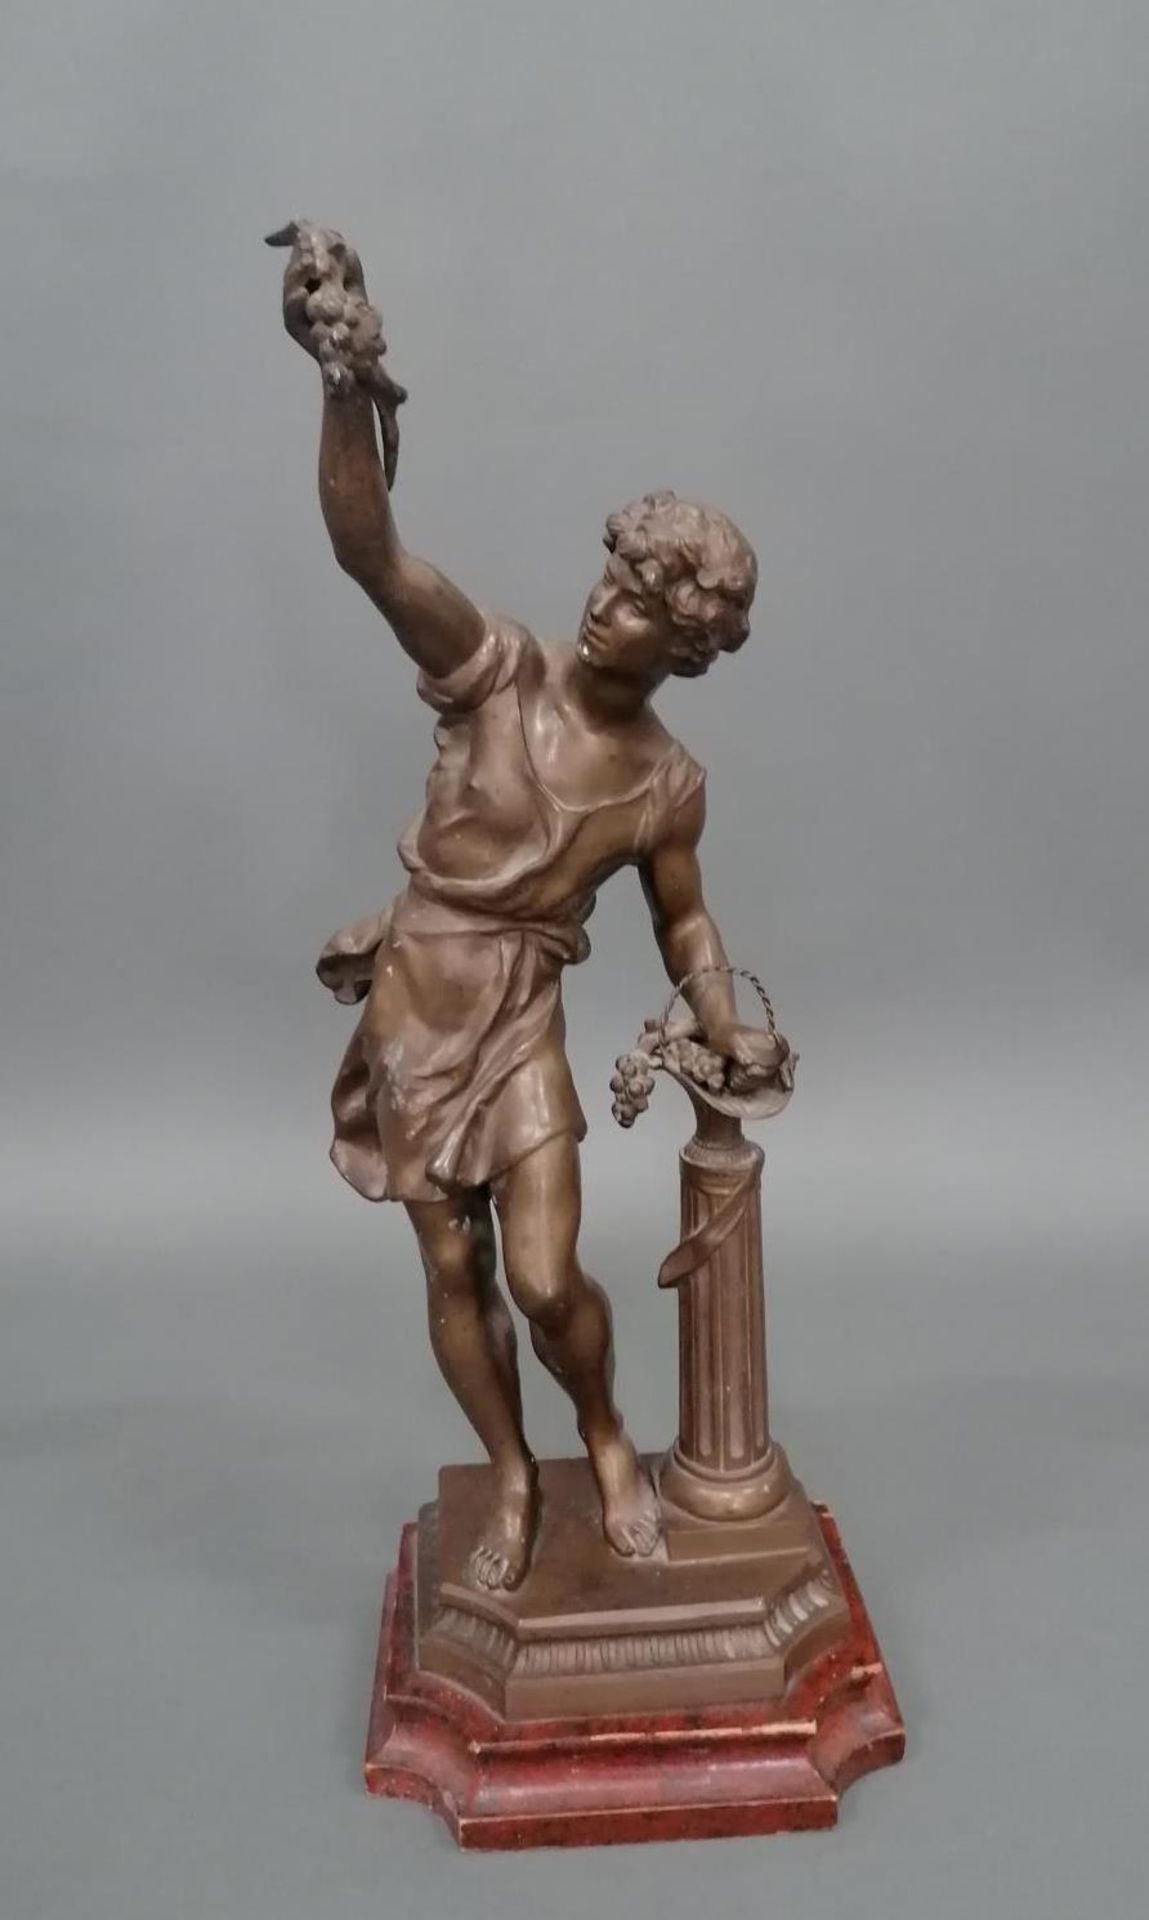 Skulptur des Weingottes Dionysos/Bacchus nach der Antike